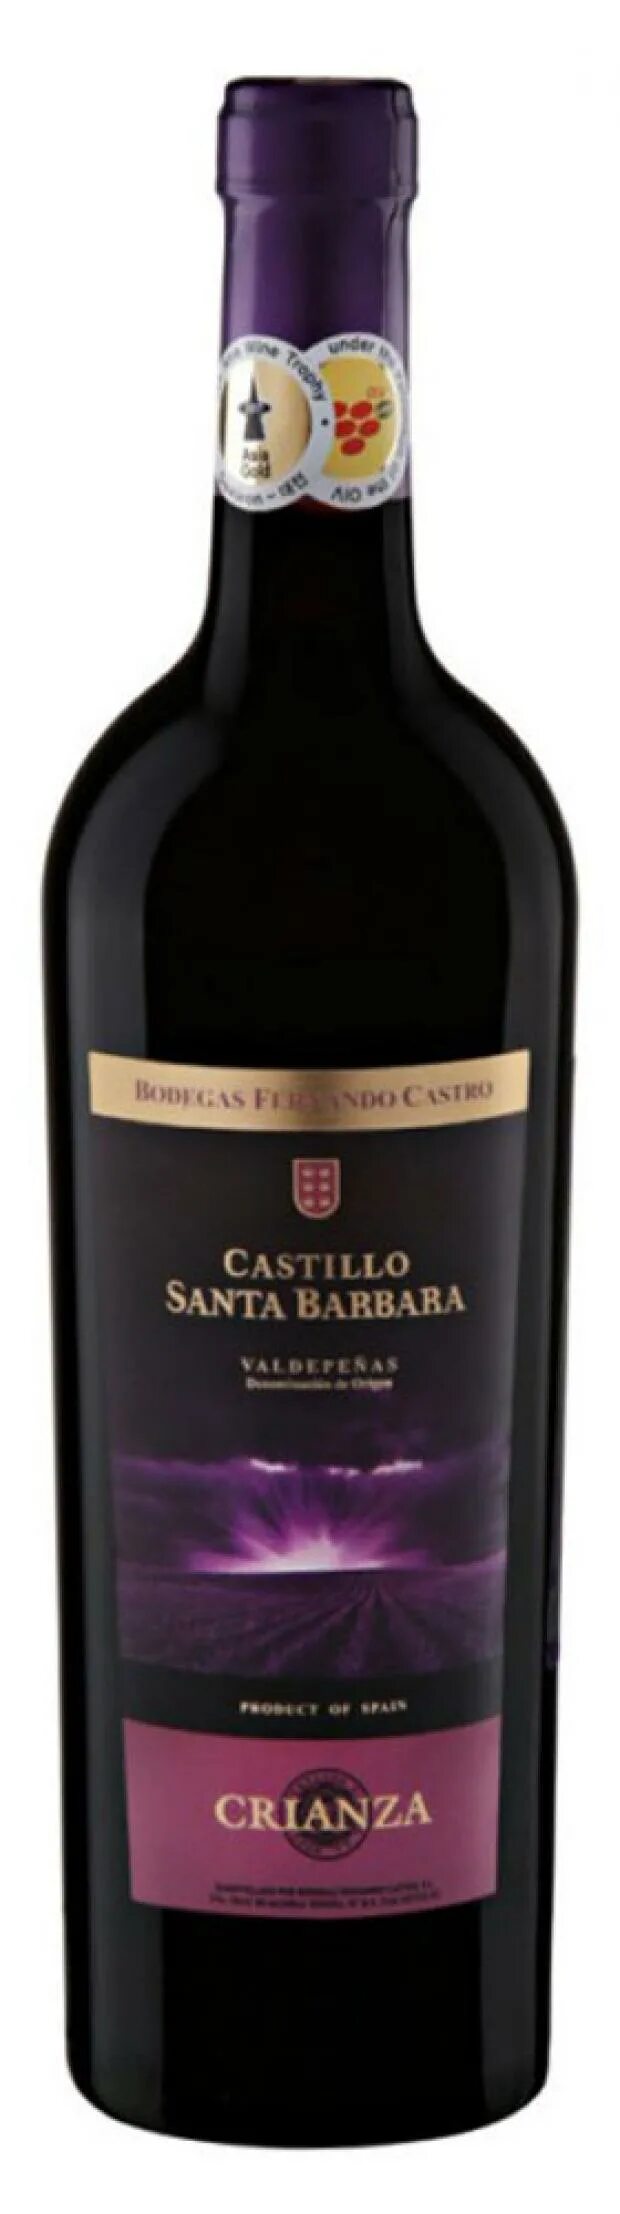 Вино красное сухое Санта Барбара. Кастильо Санта Барбара Крианса. Вино Кастильо Санта Барбара красное сухое. Вино Кастильо Санта Барбара, Крианса, красное, сухое (Испания), 0,75л. Купить вино castillo